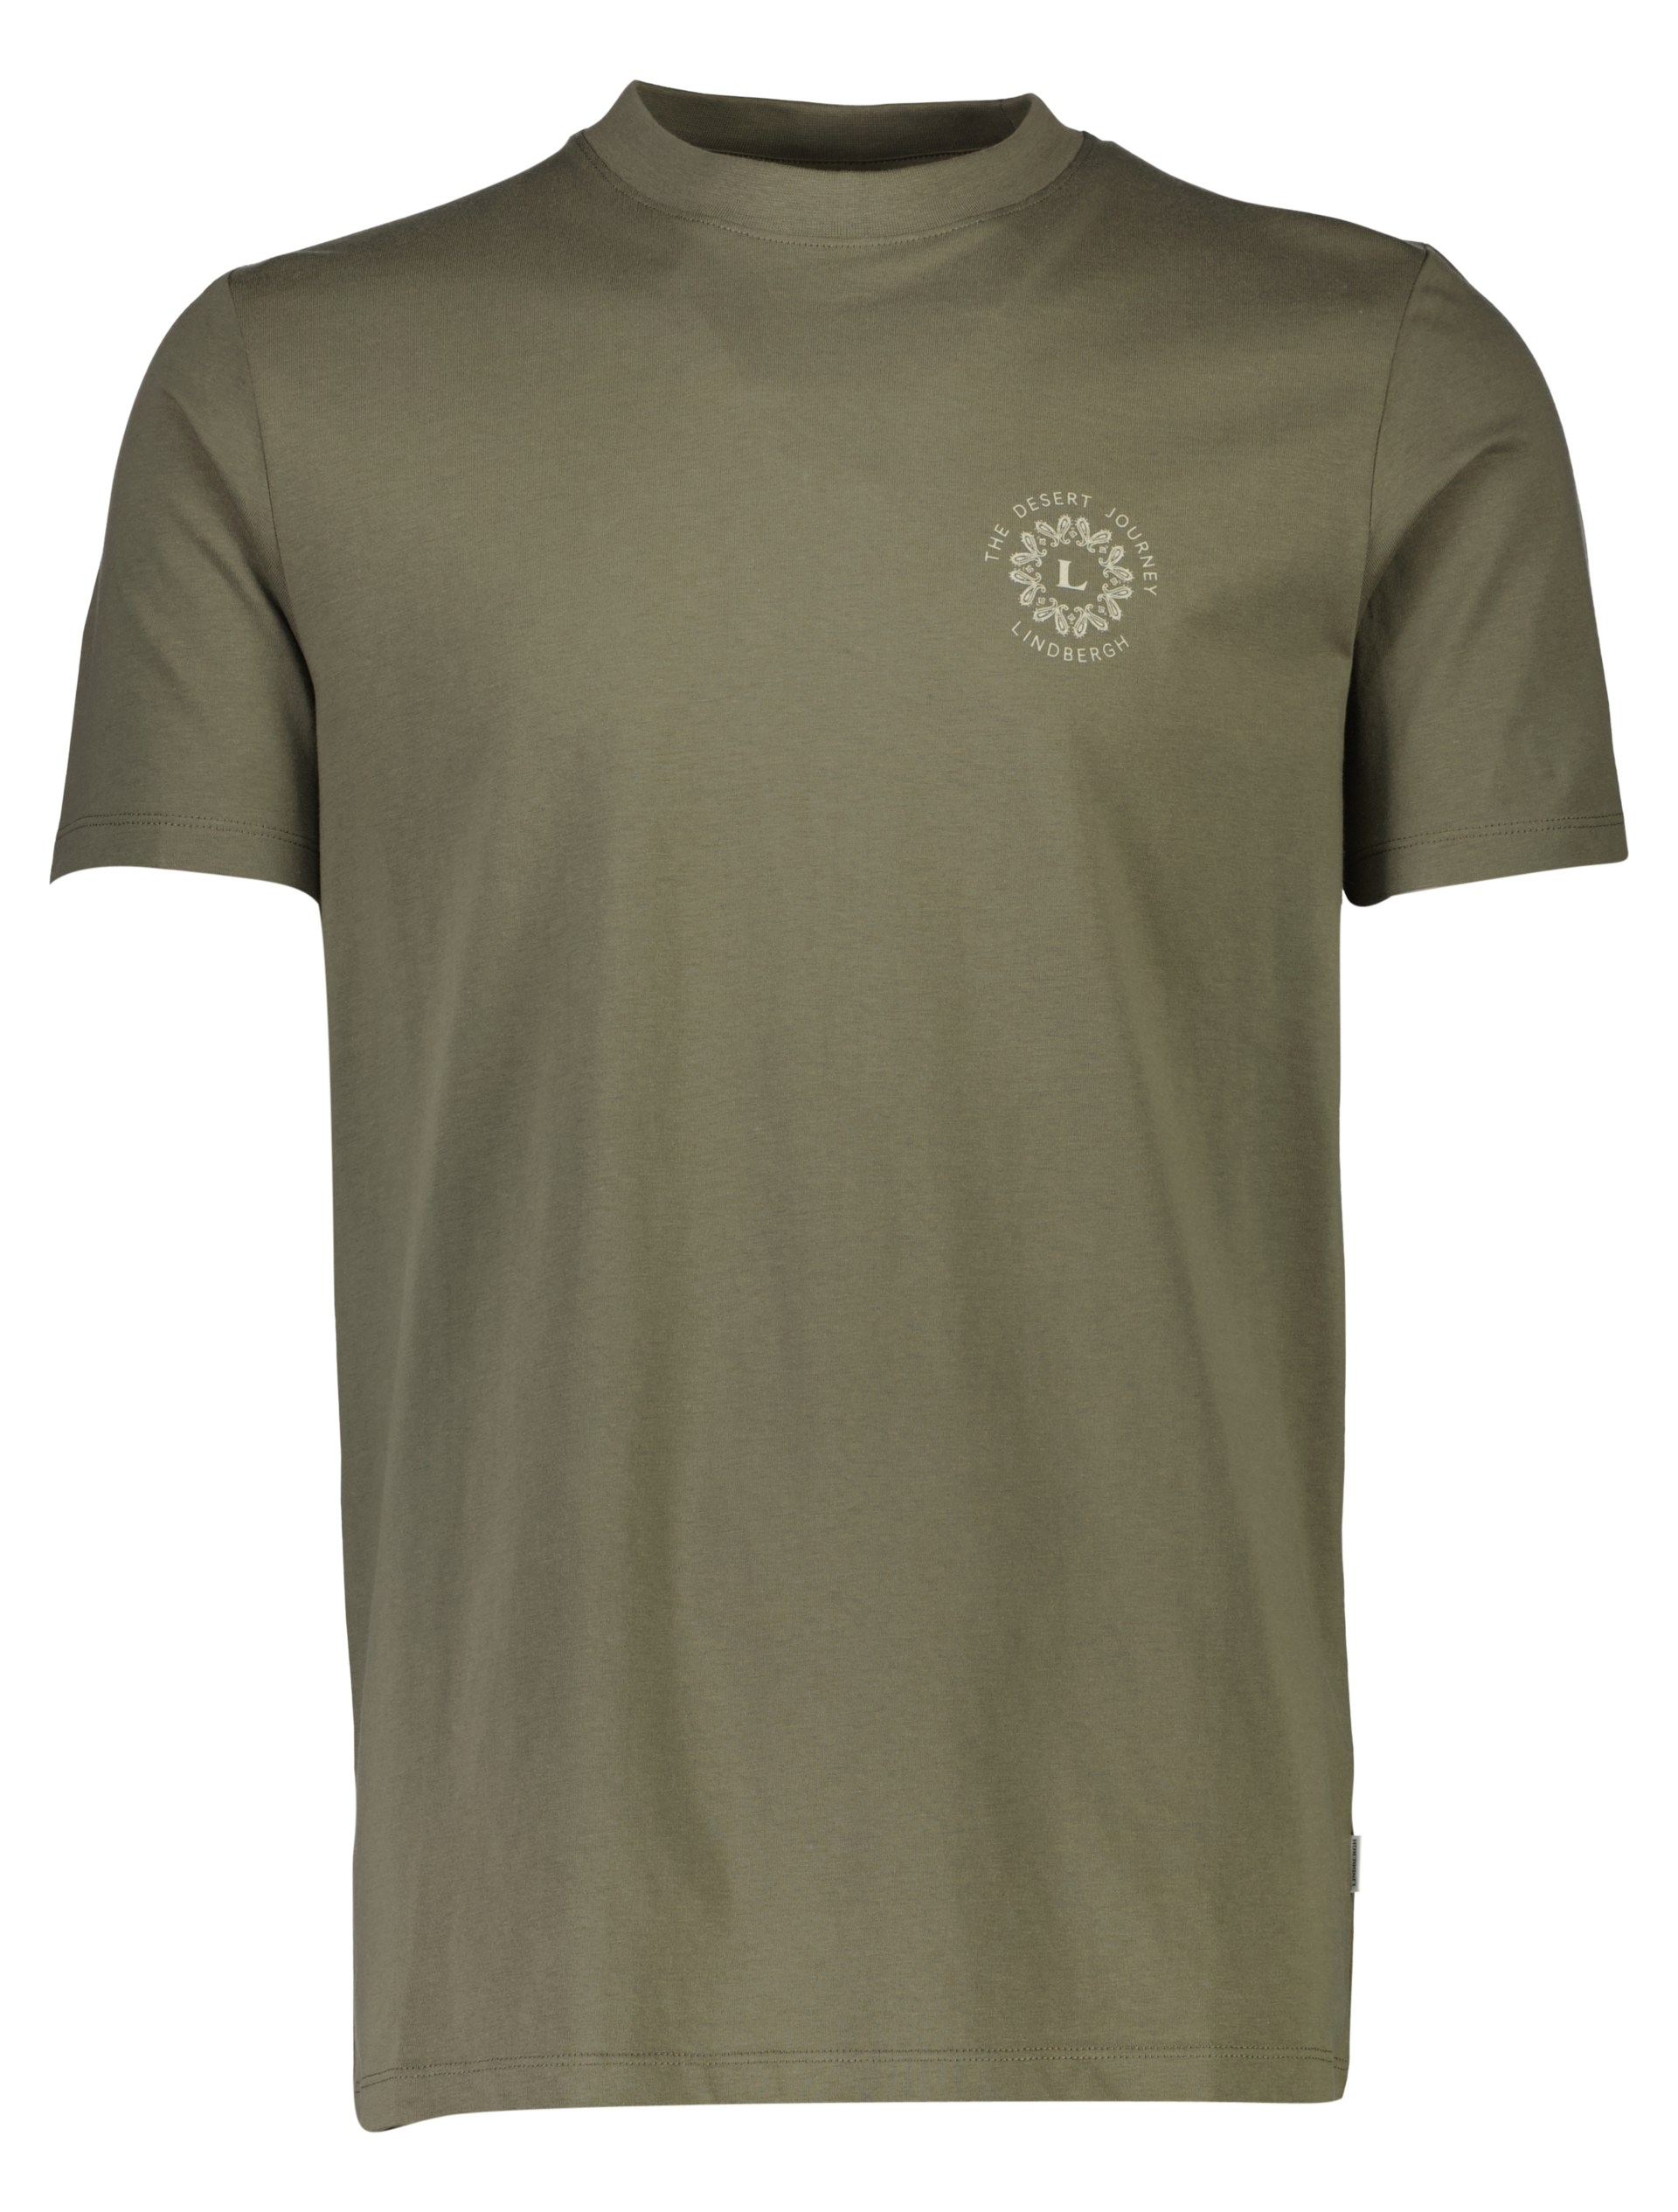 Lindbergh T-shirt grön / lt army